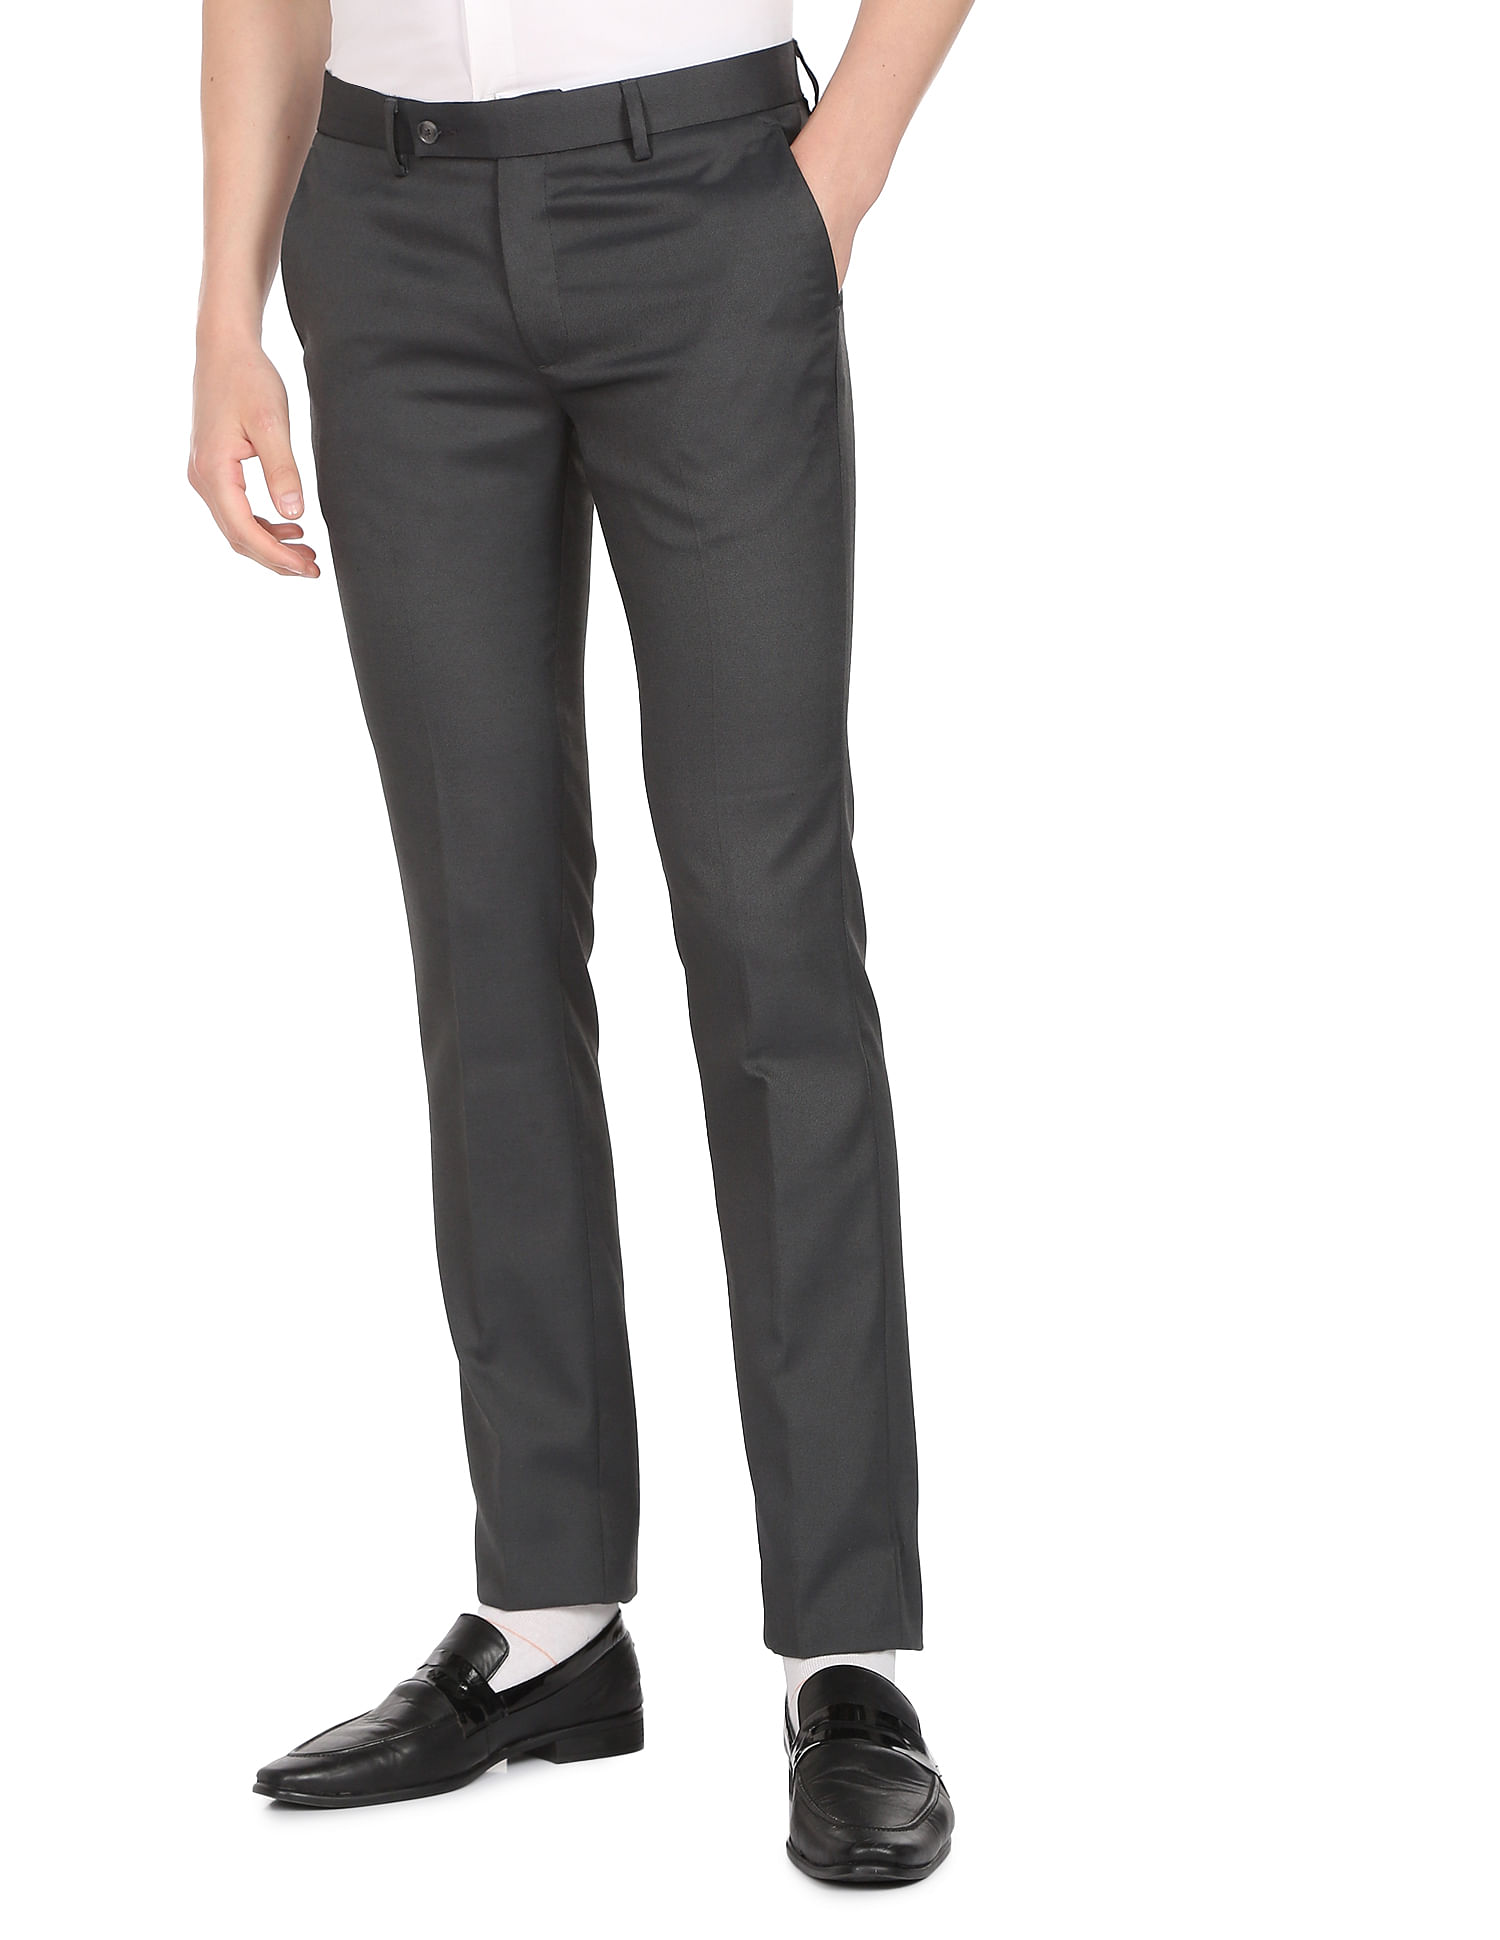 Blackberry Grey Slim Fit Trousers Pant For Men price in UAE | Amazon UAE |  kanbkam